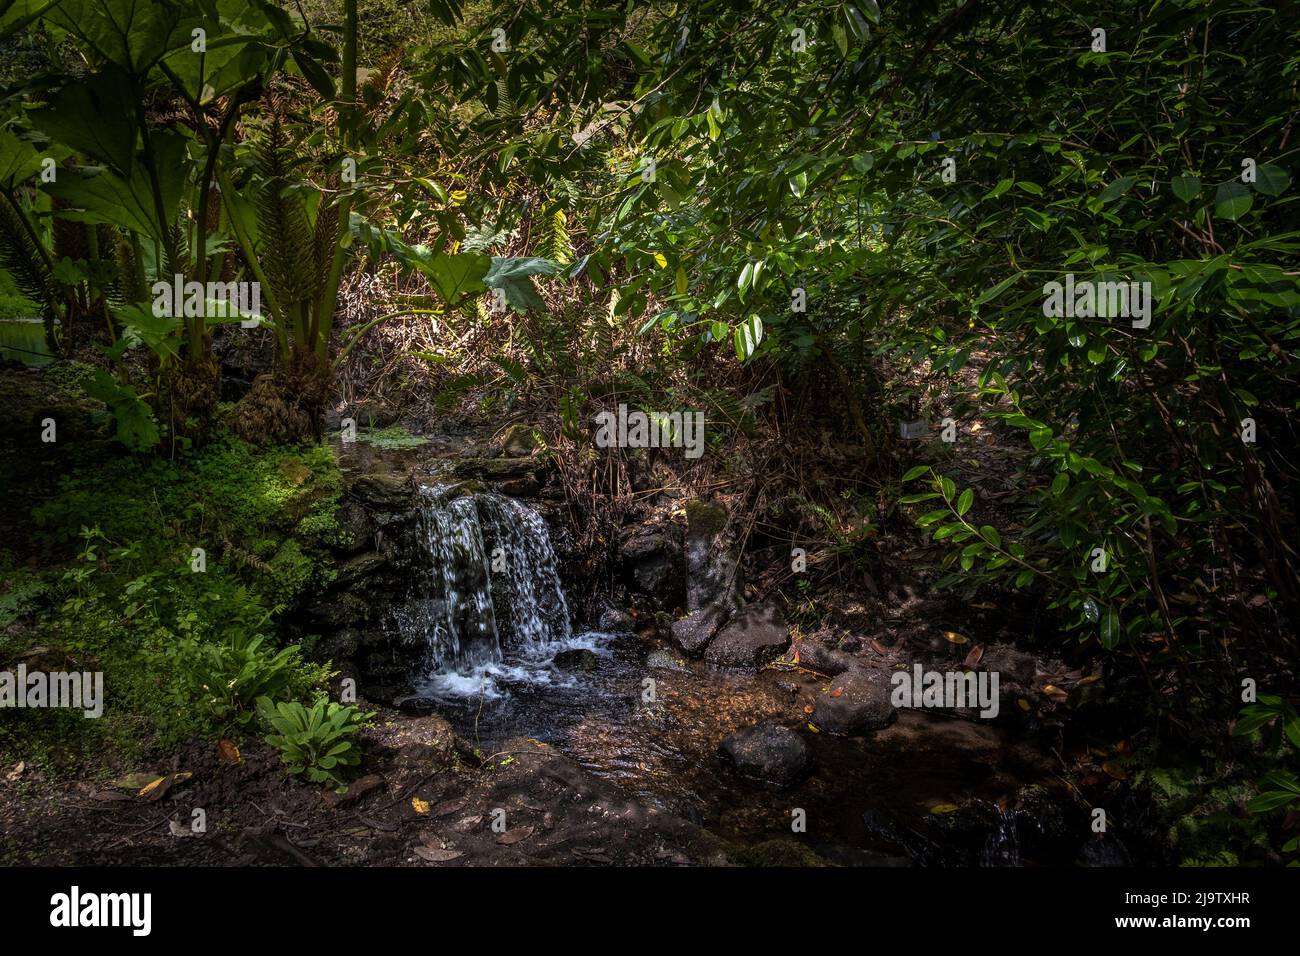 Eau en cascade dans le jardin sauvage subtropical Penjjick à Cornwall. Penjerrick Garden est reconnu comme le véritable jardin de la jungle de Cornmurals en Angleterre Banque D'Images